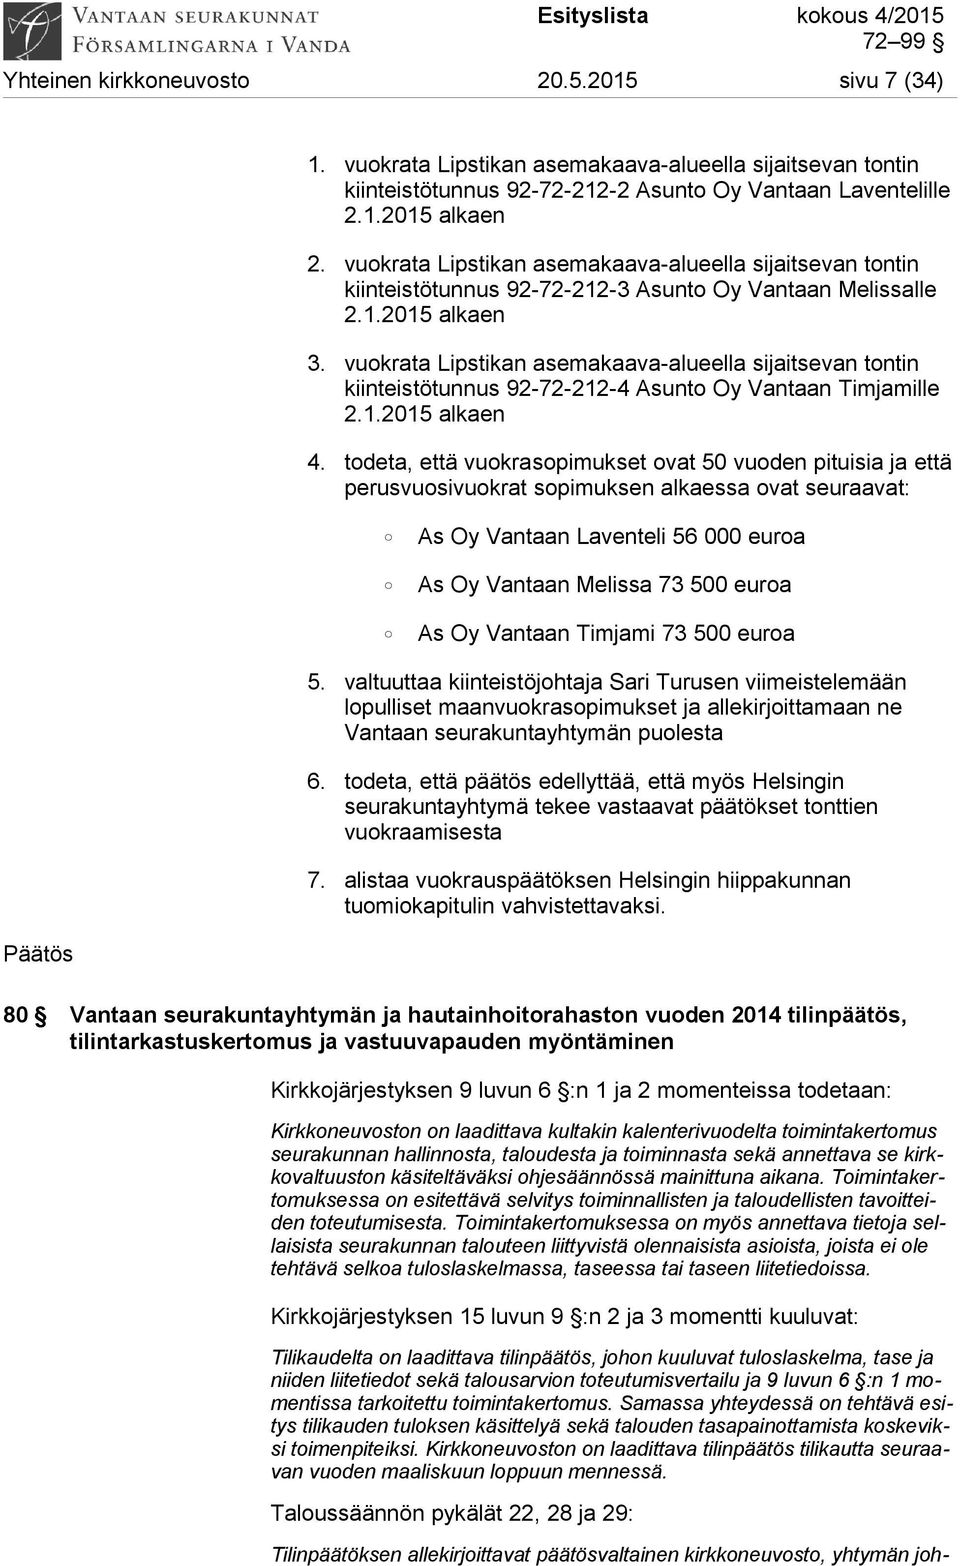 vuokrata Lipstikan asemakaava-alueella sijaitsevan tontin kiinteistötunnus 92-72-212-4 Asunto Oy Vantaan Timjamille 2.1.2015 alkaen 4.